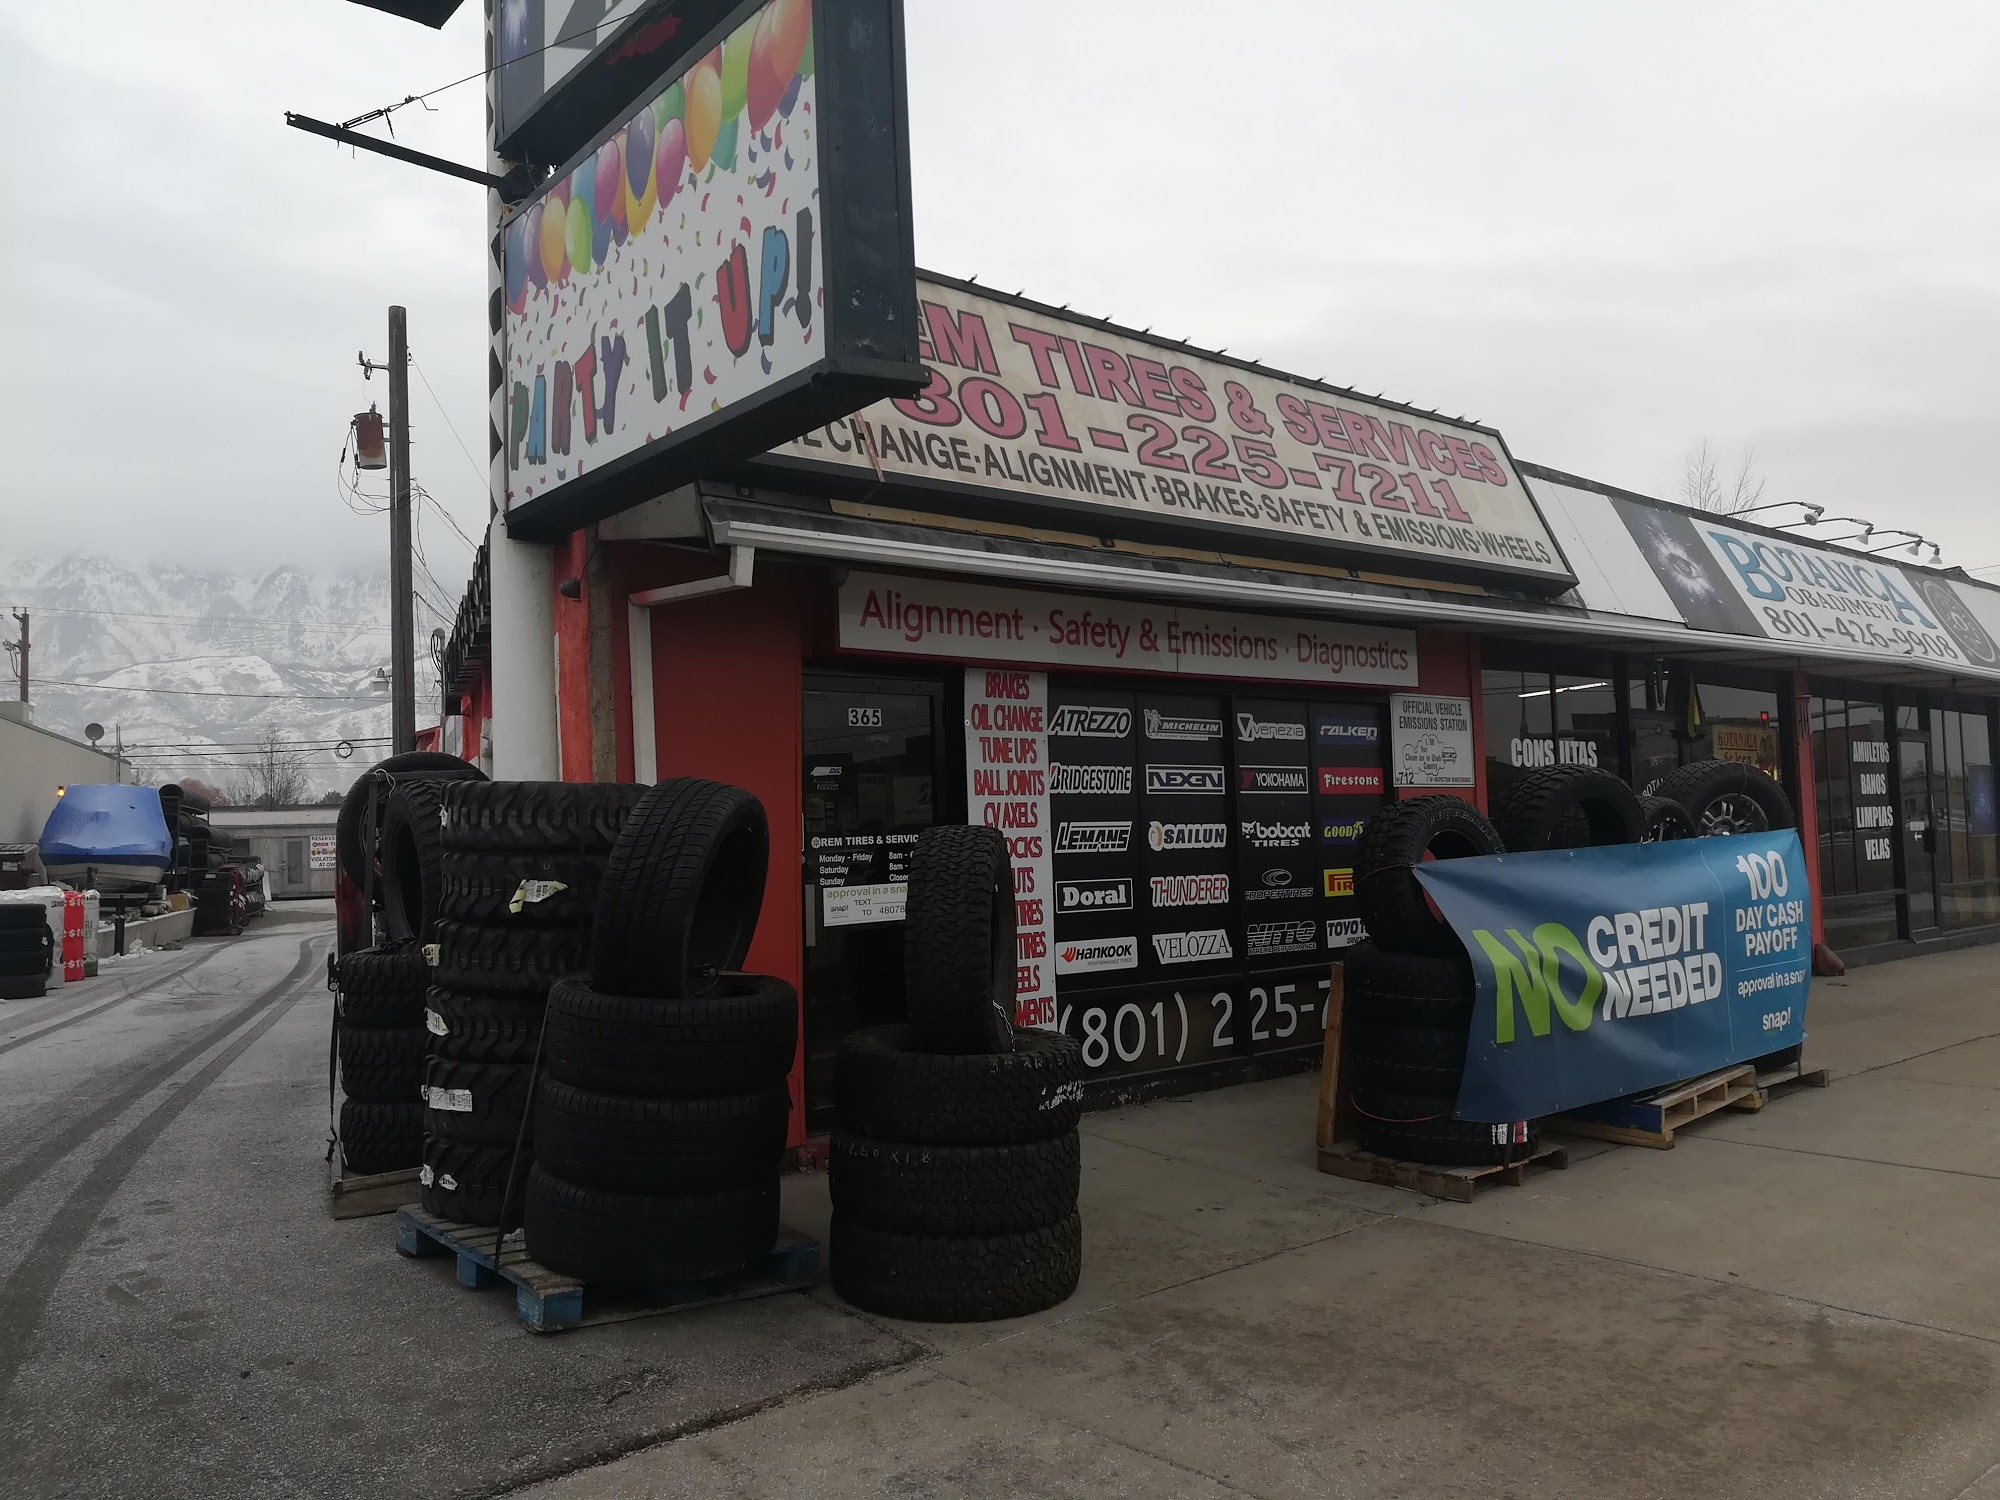 A G Tire Shop